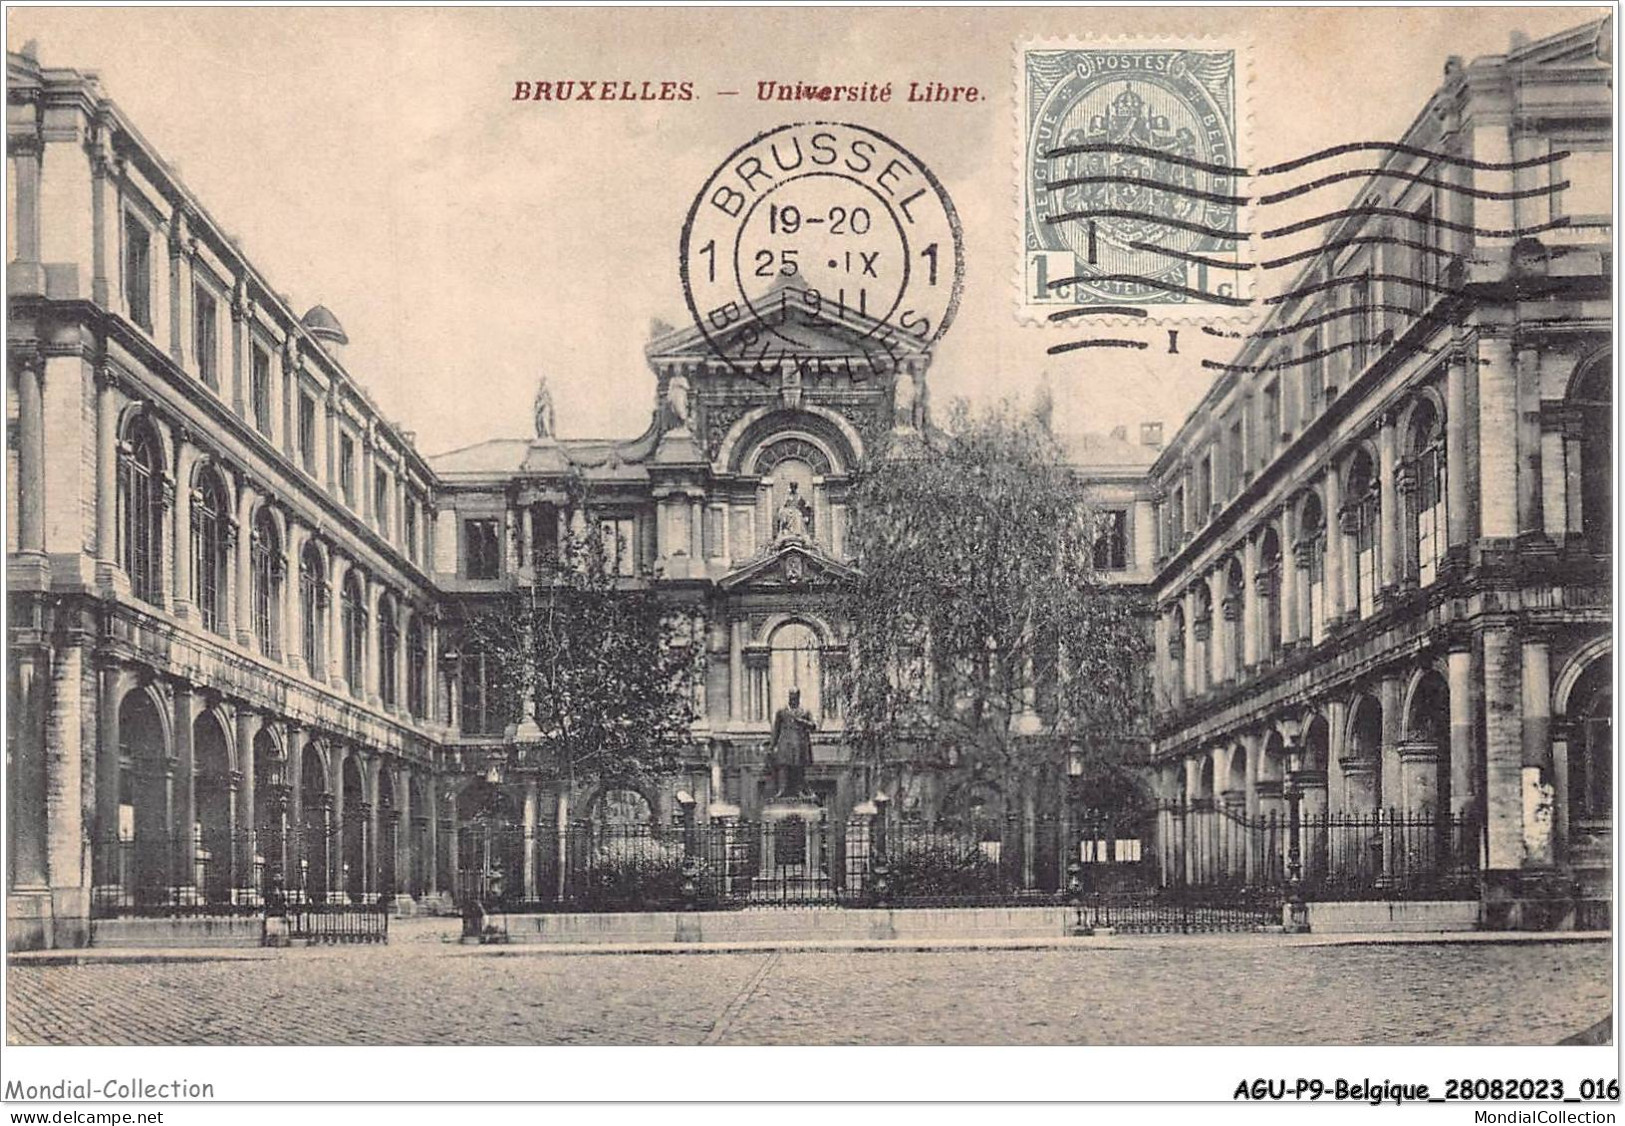 AGUP9-0725-BELGIQUE - BRUXELLES - Université Libre - Education, Schools And Universities